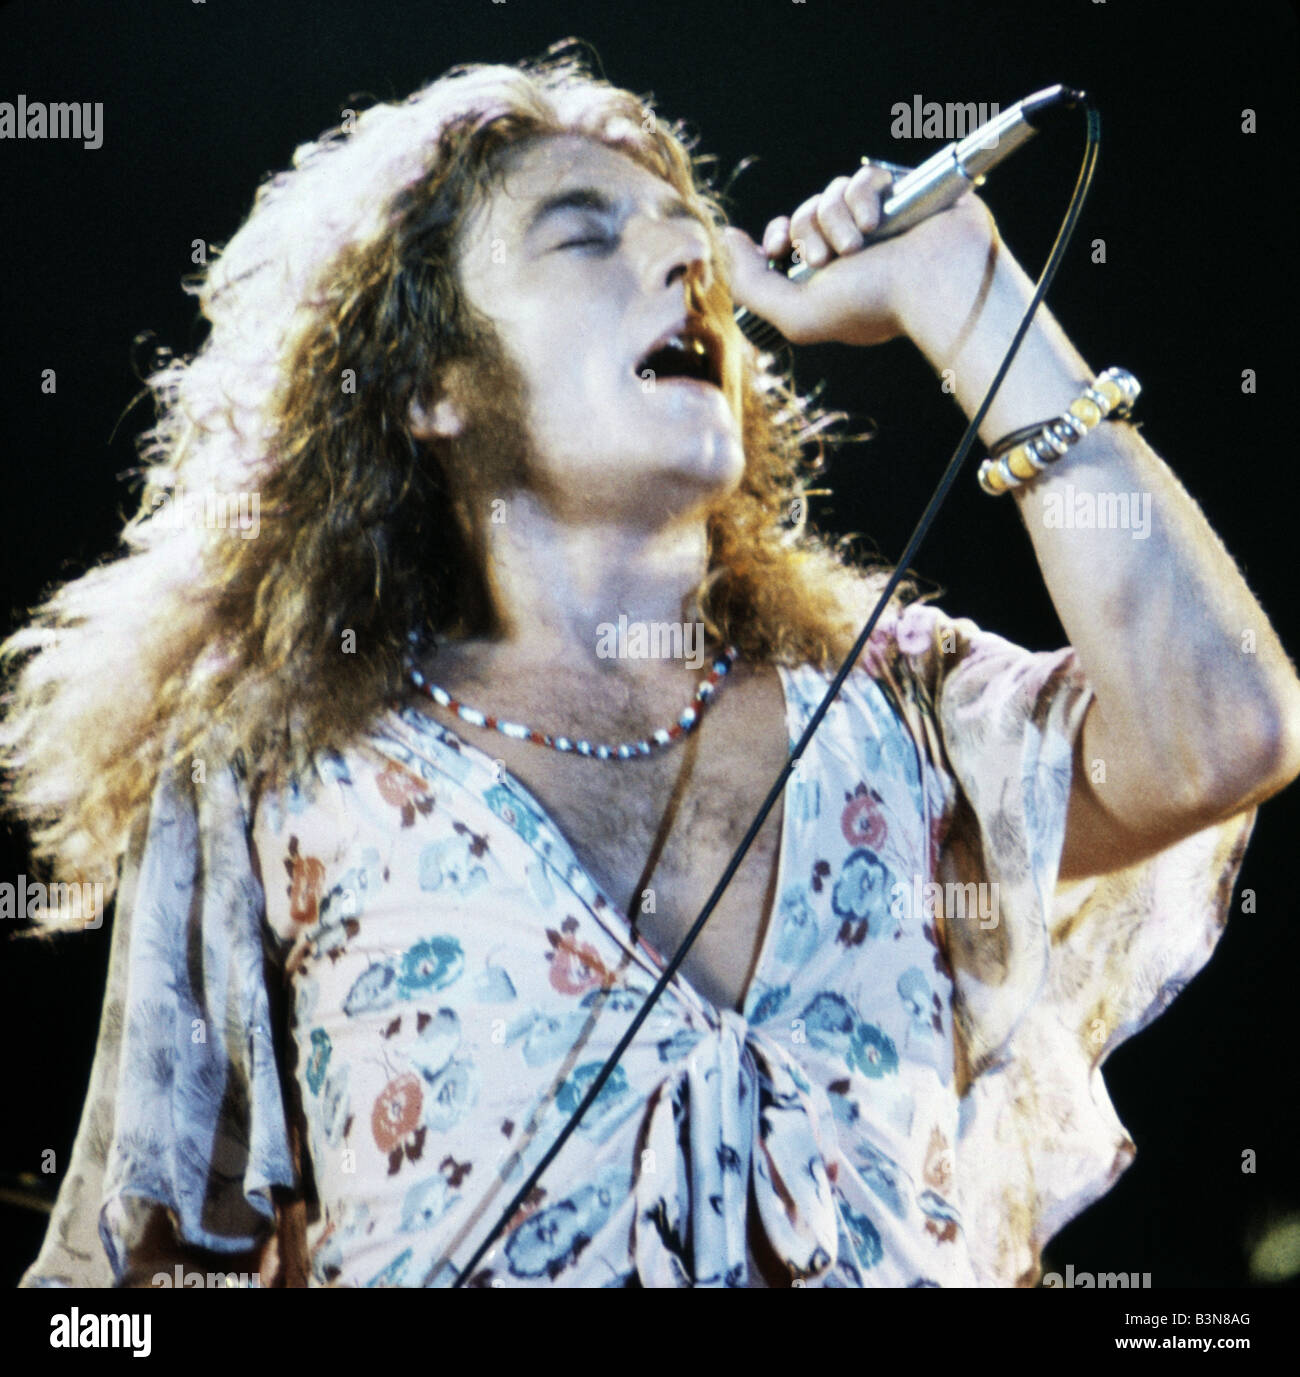 Groupe de rock britannique Led Zeppelin avec Robert Plant chanteur sur 1976  Photo Stock - Alamy